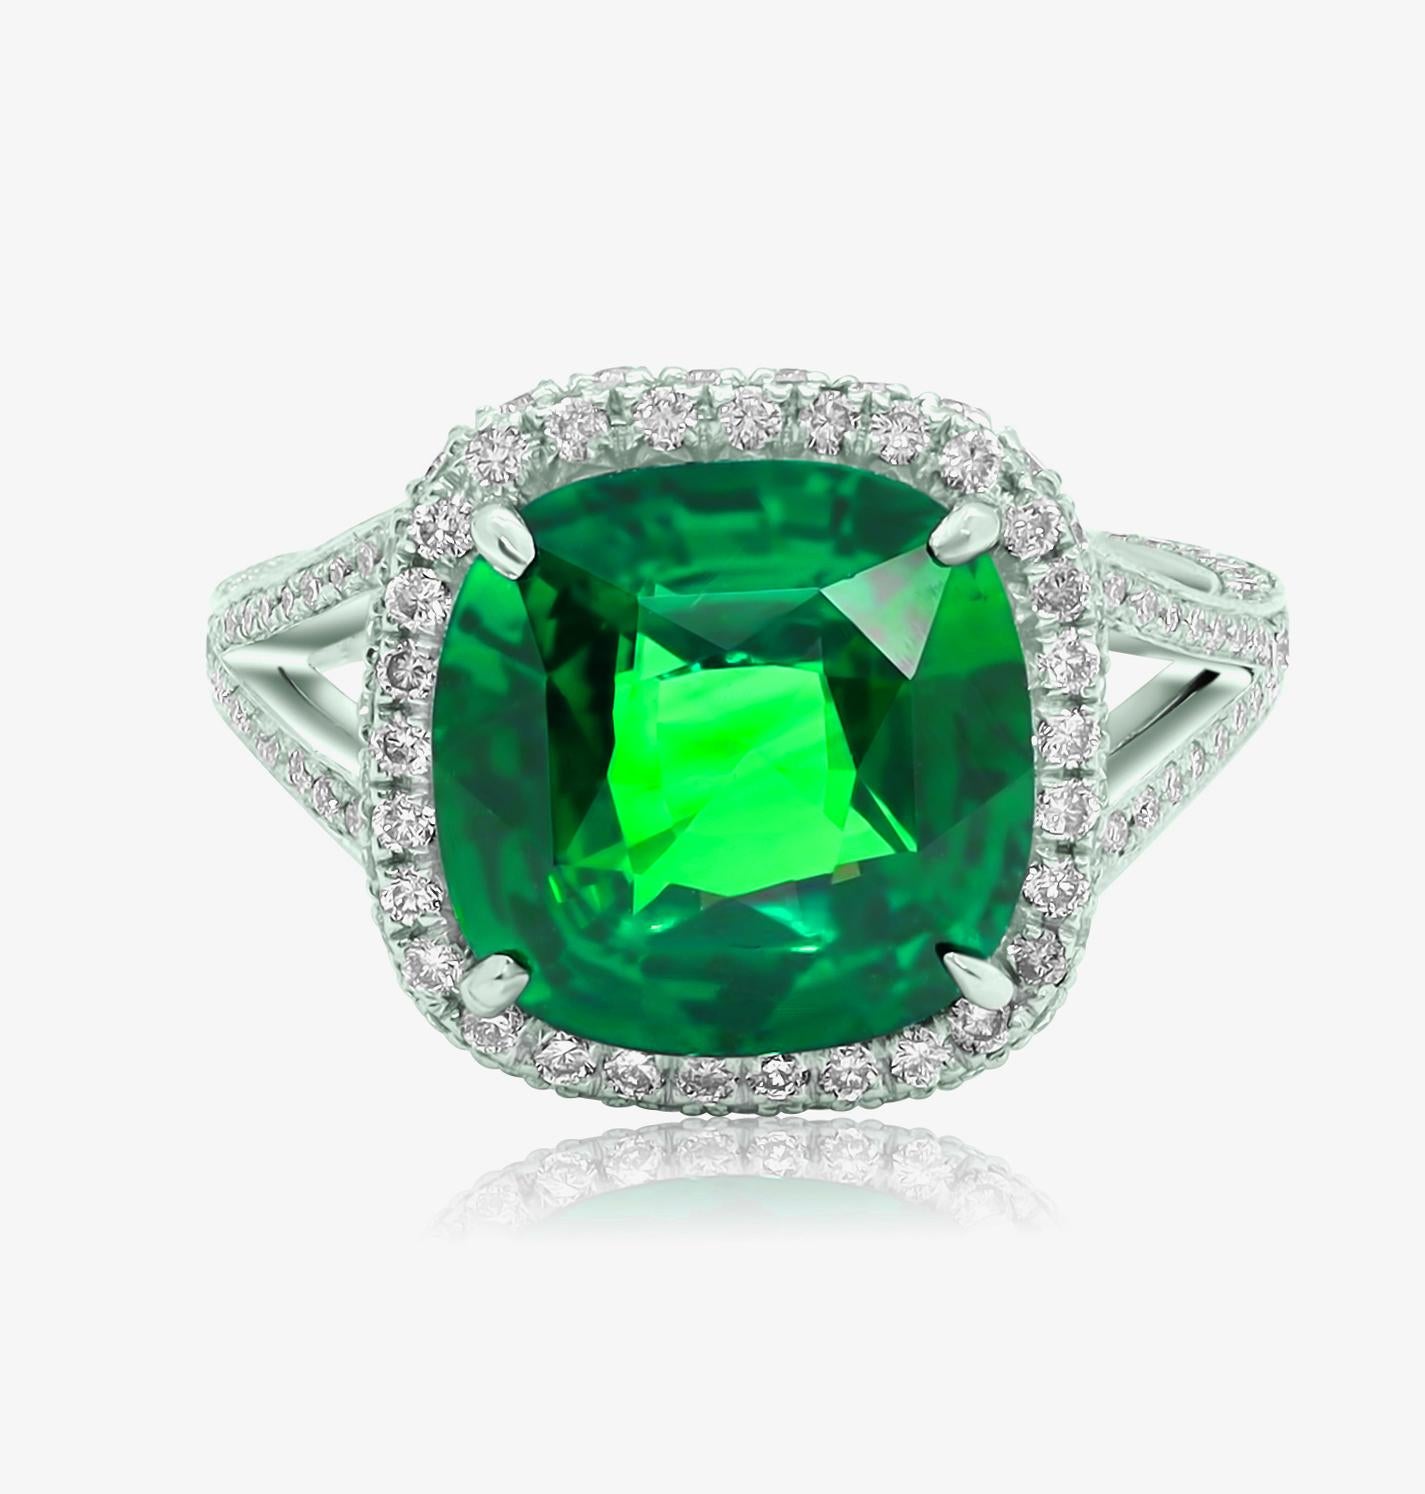 Smaragd-Diamantring aus 18 Karat Weißgold mit einem grünen Smaragd im Kissenschliff von 6,63 Karat und 1,50 Karat runden Mikropave-Diamanten in einer Halo-Fassung.
Diana M. ist seit über 35 Jahren ein führender Anbieter von hochwertigem